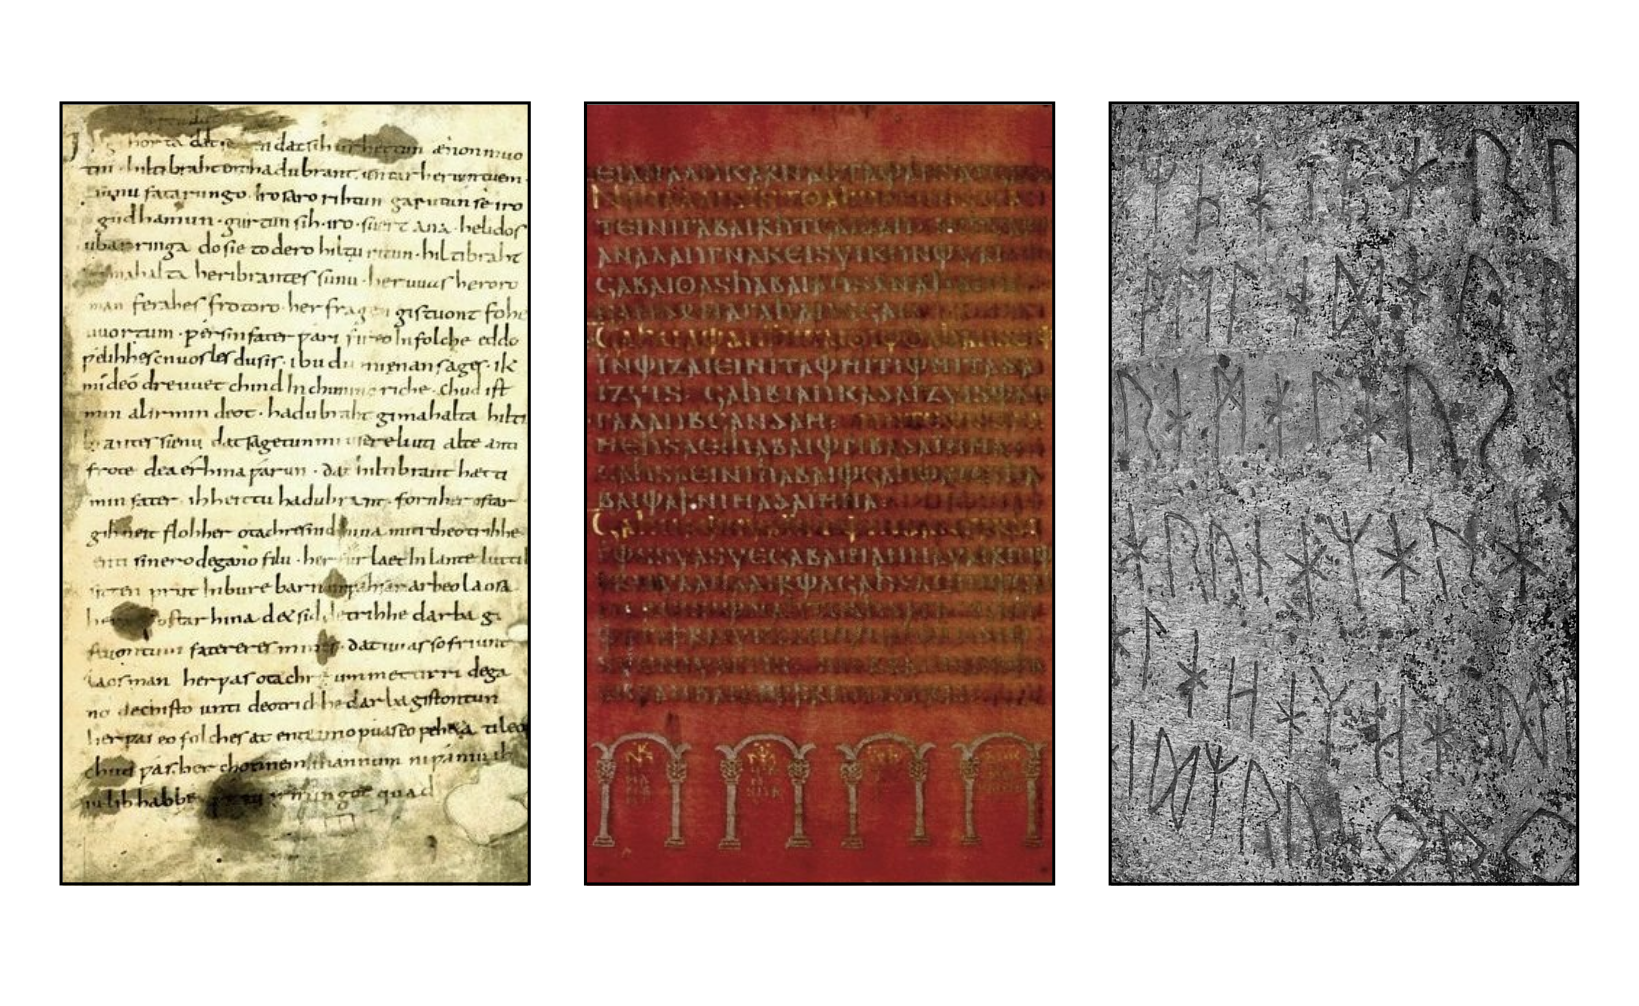 Bildnachweis: Bilder aus Wikimedia Commons. Links: Hildebrandslied (Public domein), Mitte: Codex Argenteus (Public domain), rechts: Runenstein von Björketorp (Foto H. Sendelbach, CC-GY-SA-2.5 - Gestaltung: LT 